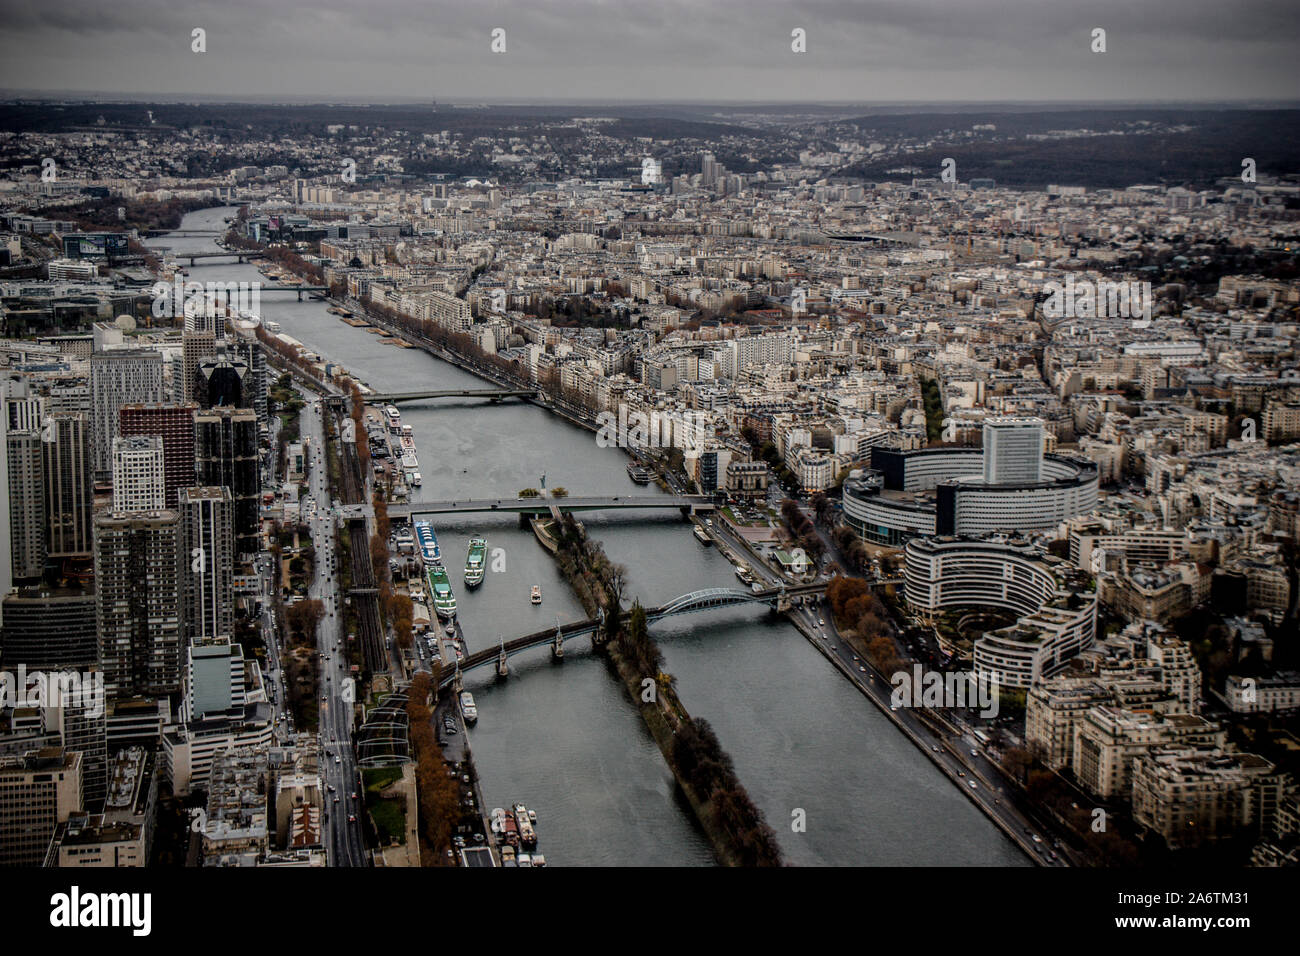 Pont de Grenelle Pont Mirabeau, Pont Garigliano, et d'autres dans l'ensemble haut de la Seine vue depuis le haut de la Tour Eiffel - Cloudy Day in Paris, France - Tournée française Banque D'Images